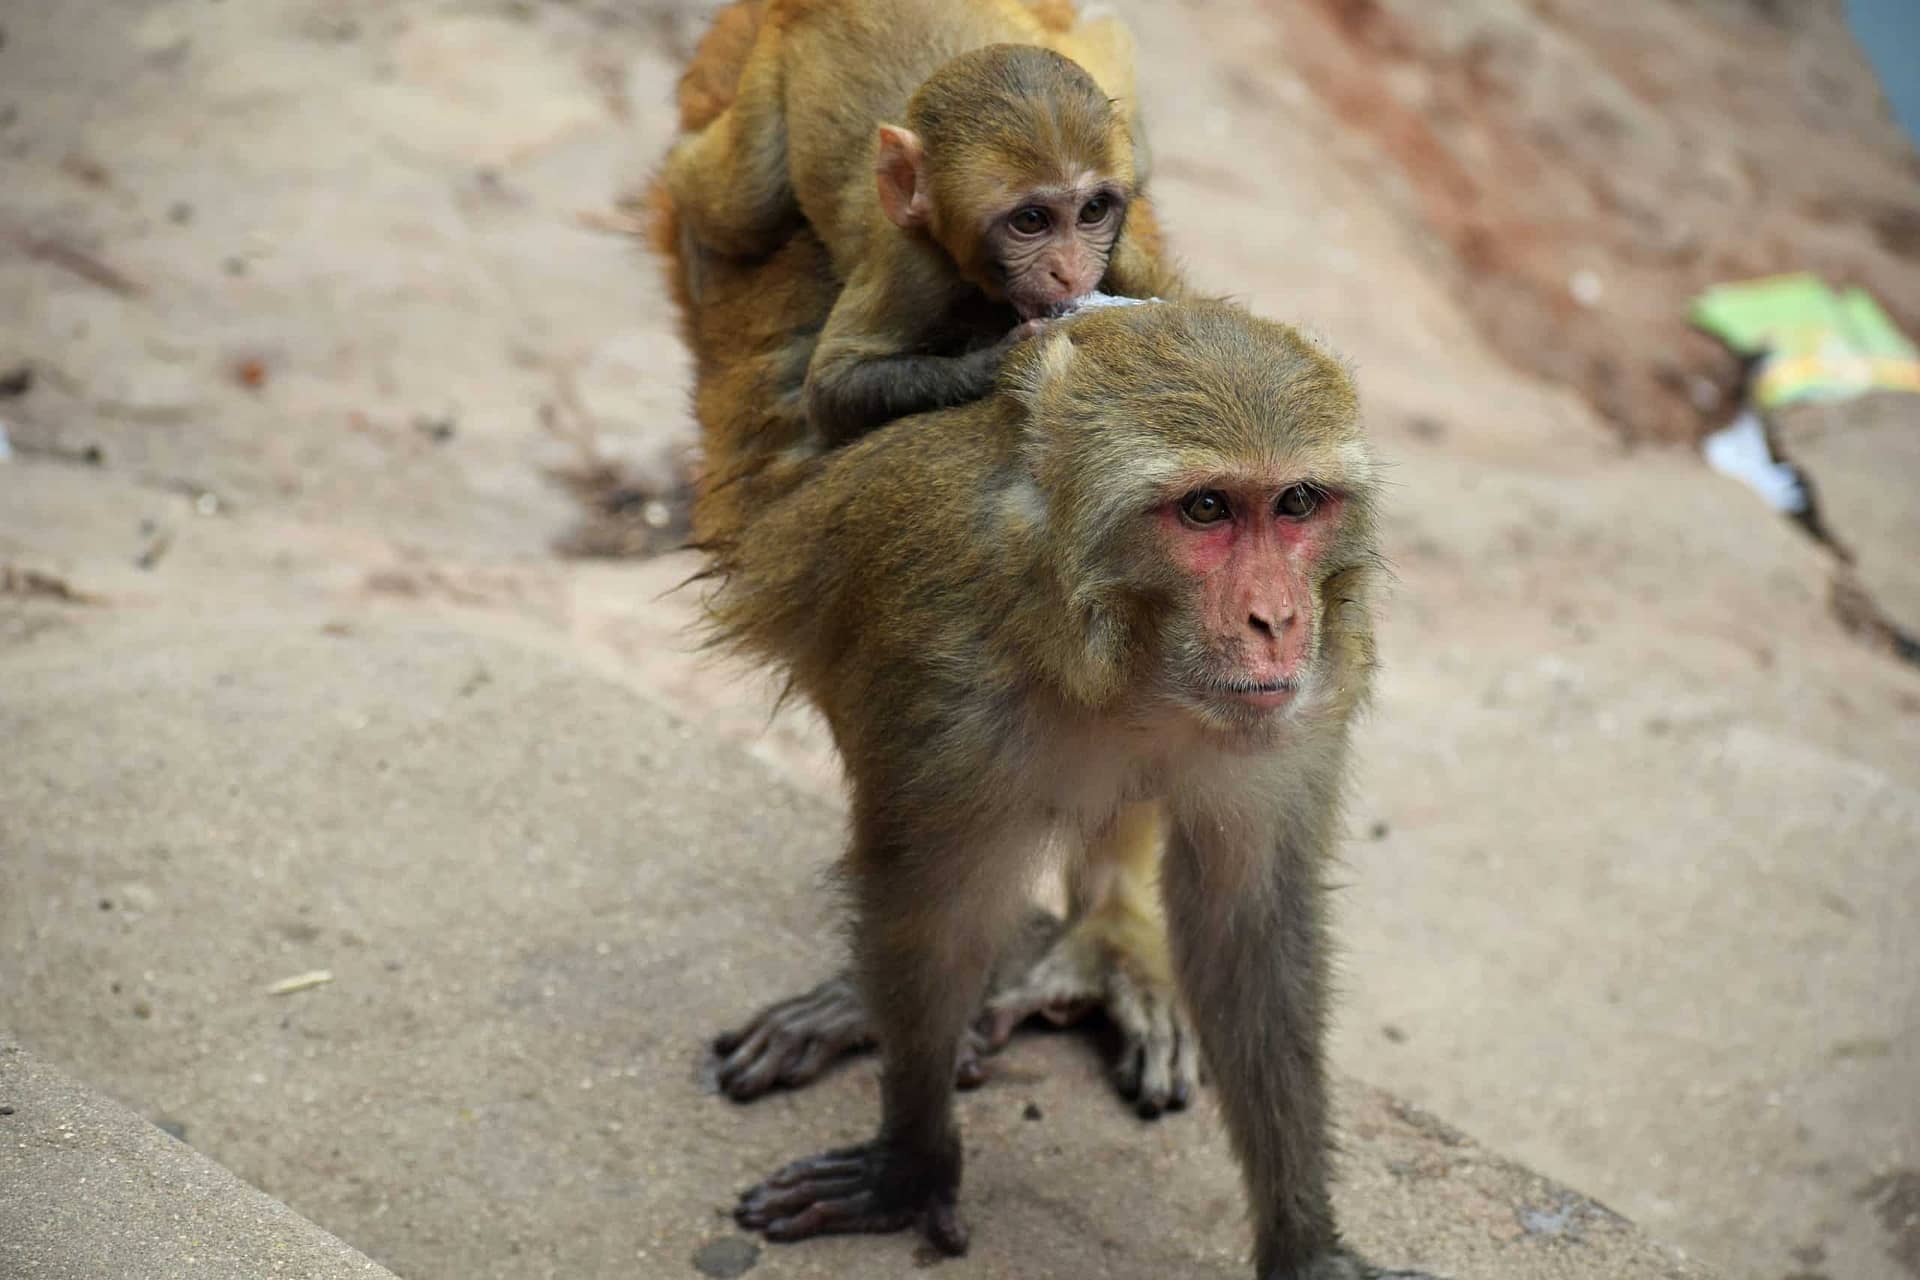 Mother experiment monkey